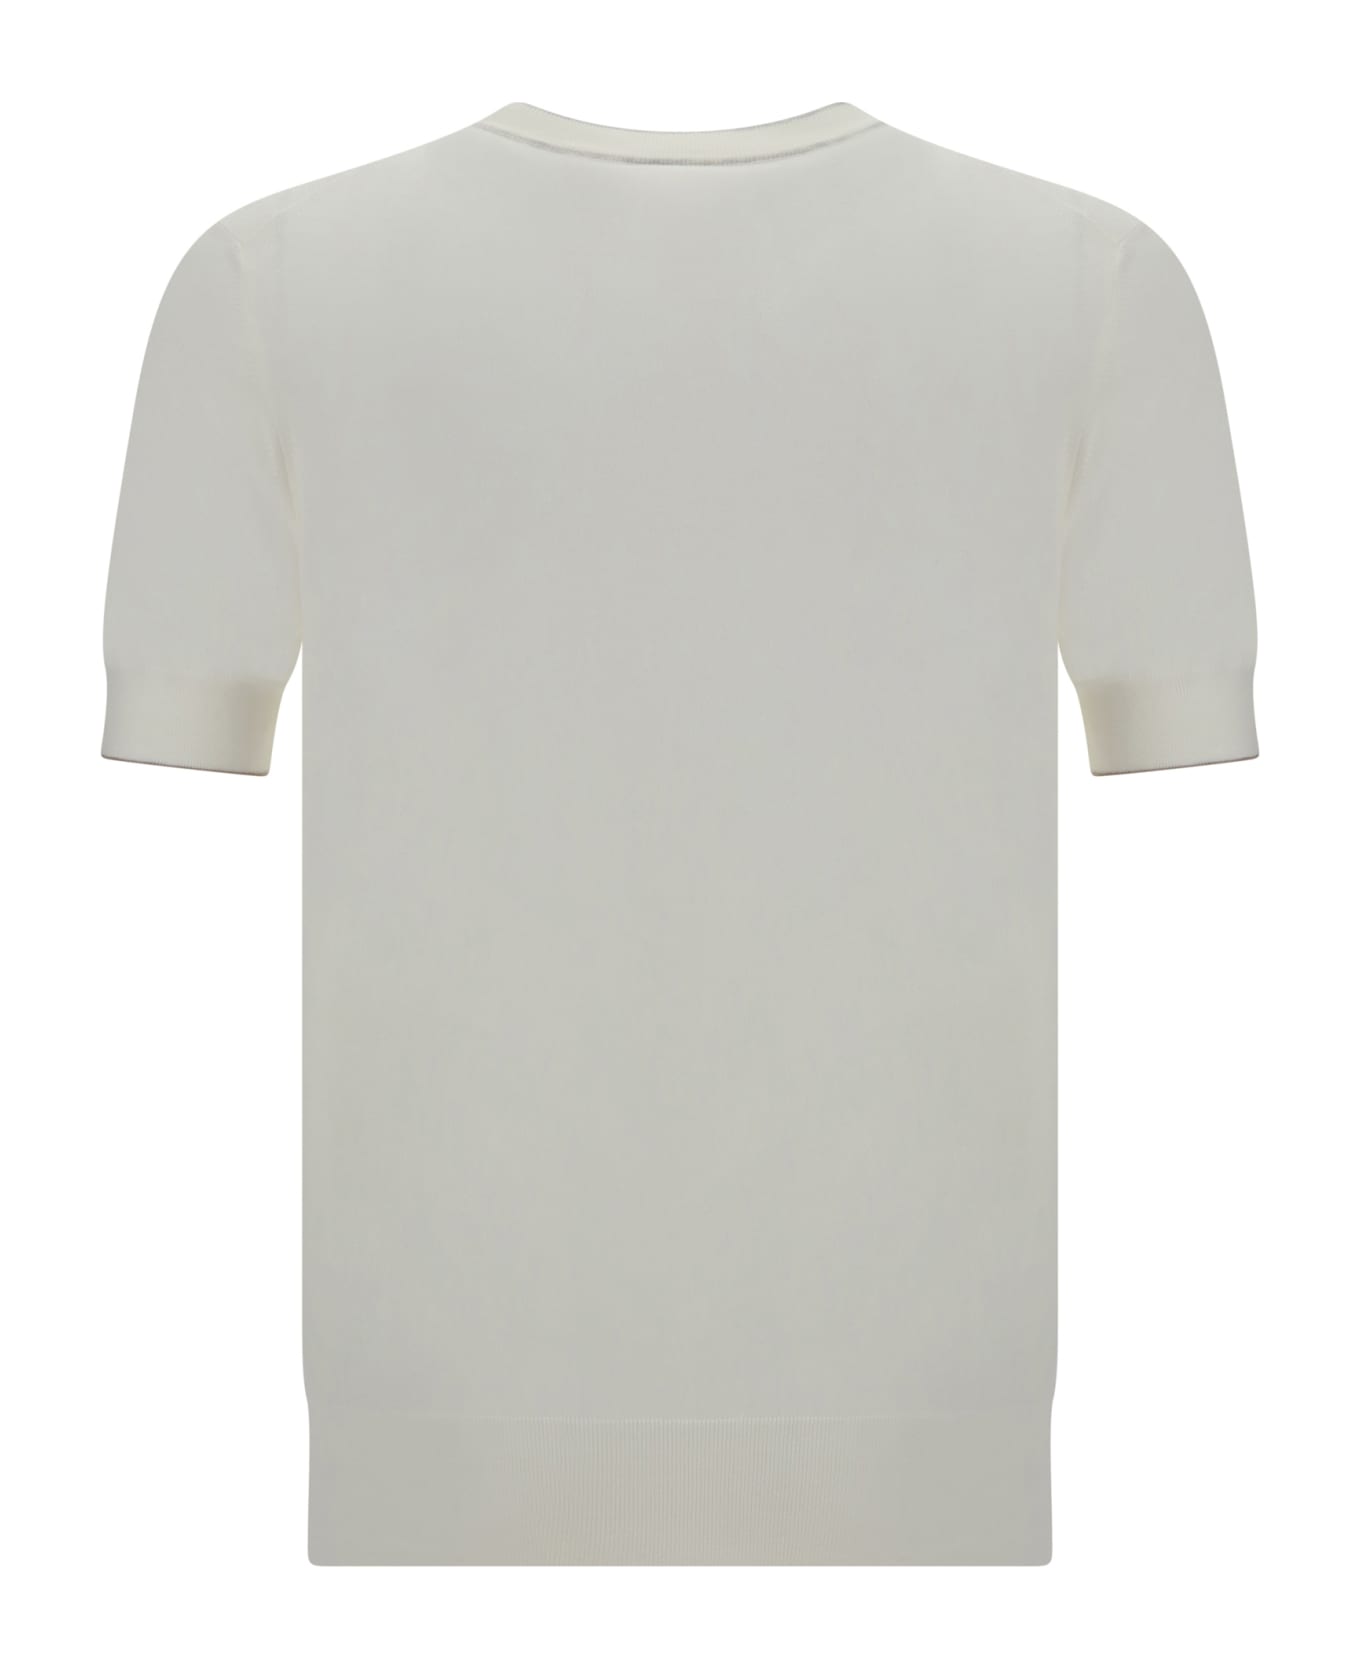 Brunello Cucinelli Cotton Knit T-shirt - Panama+nebbia+creta シャツ